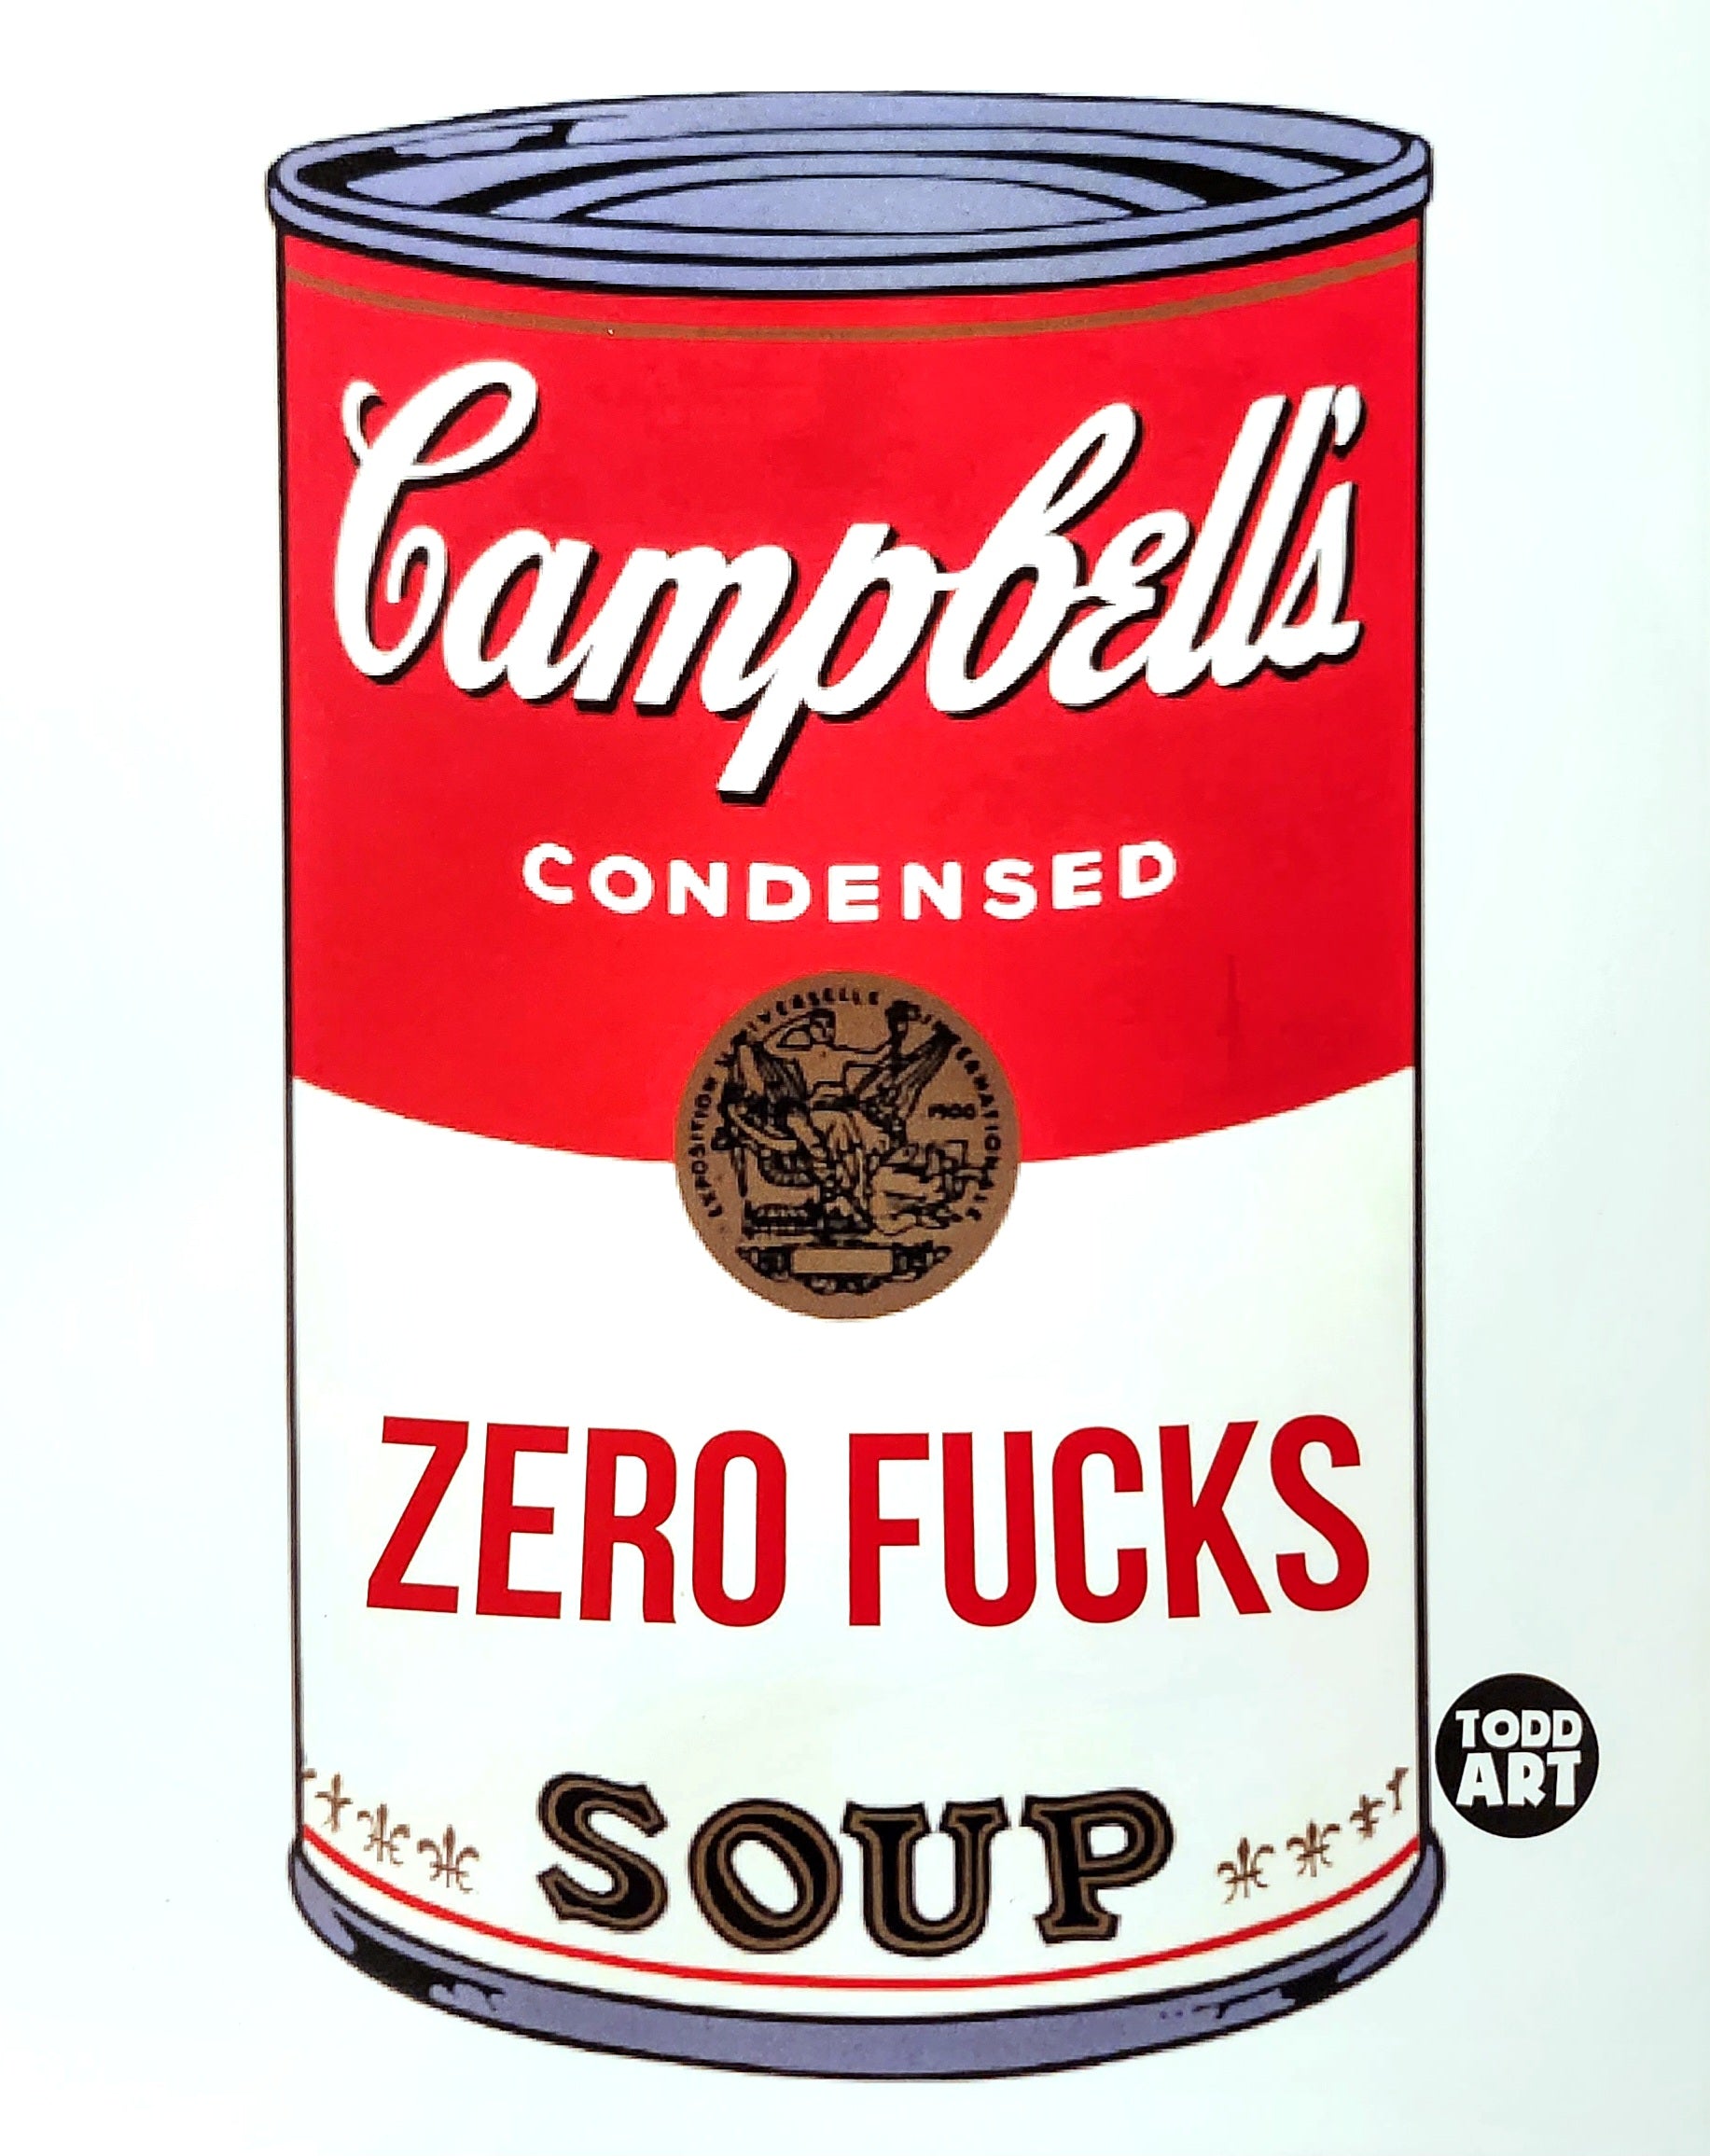 Zero Fucks Soup